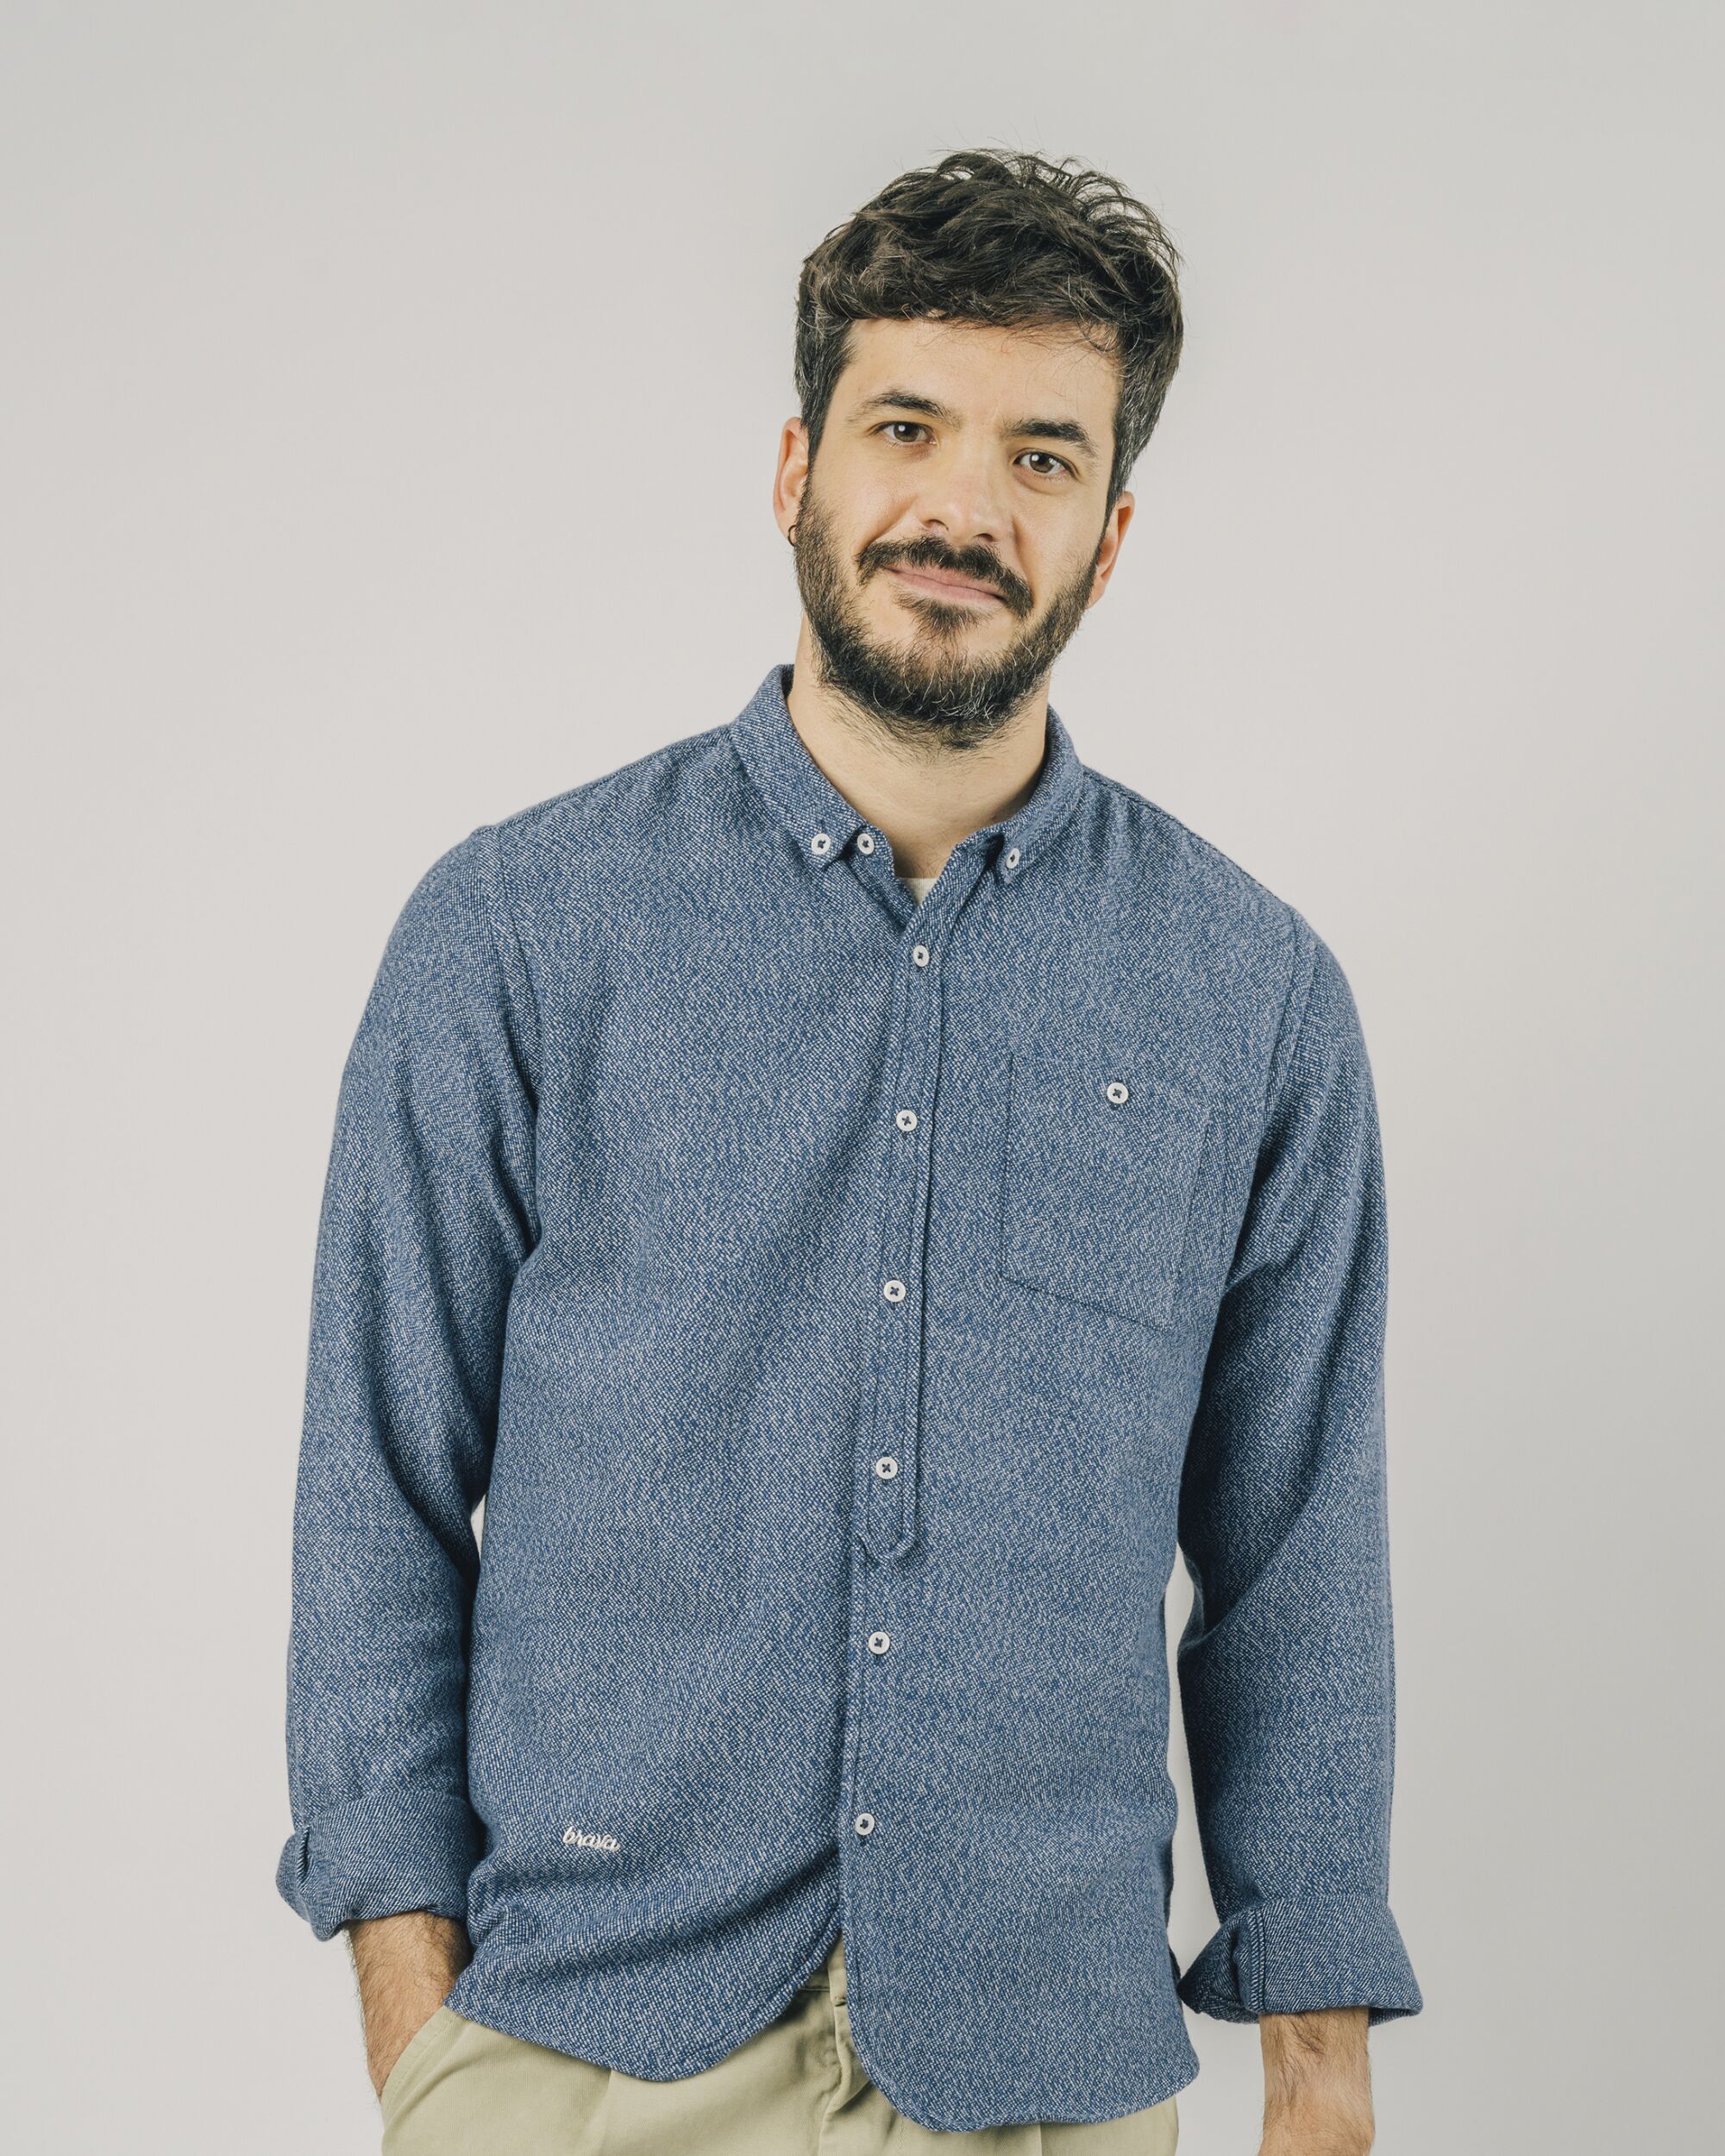 Blaues, langärmliges Hemd Nuuk aus 100% Bio-Baumwolle von Brava Fabrics